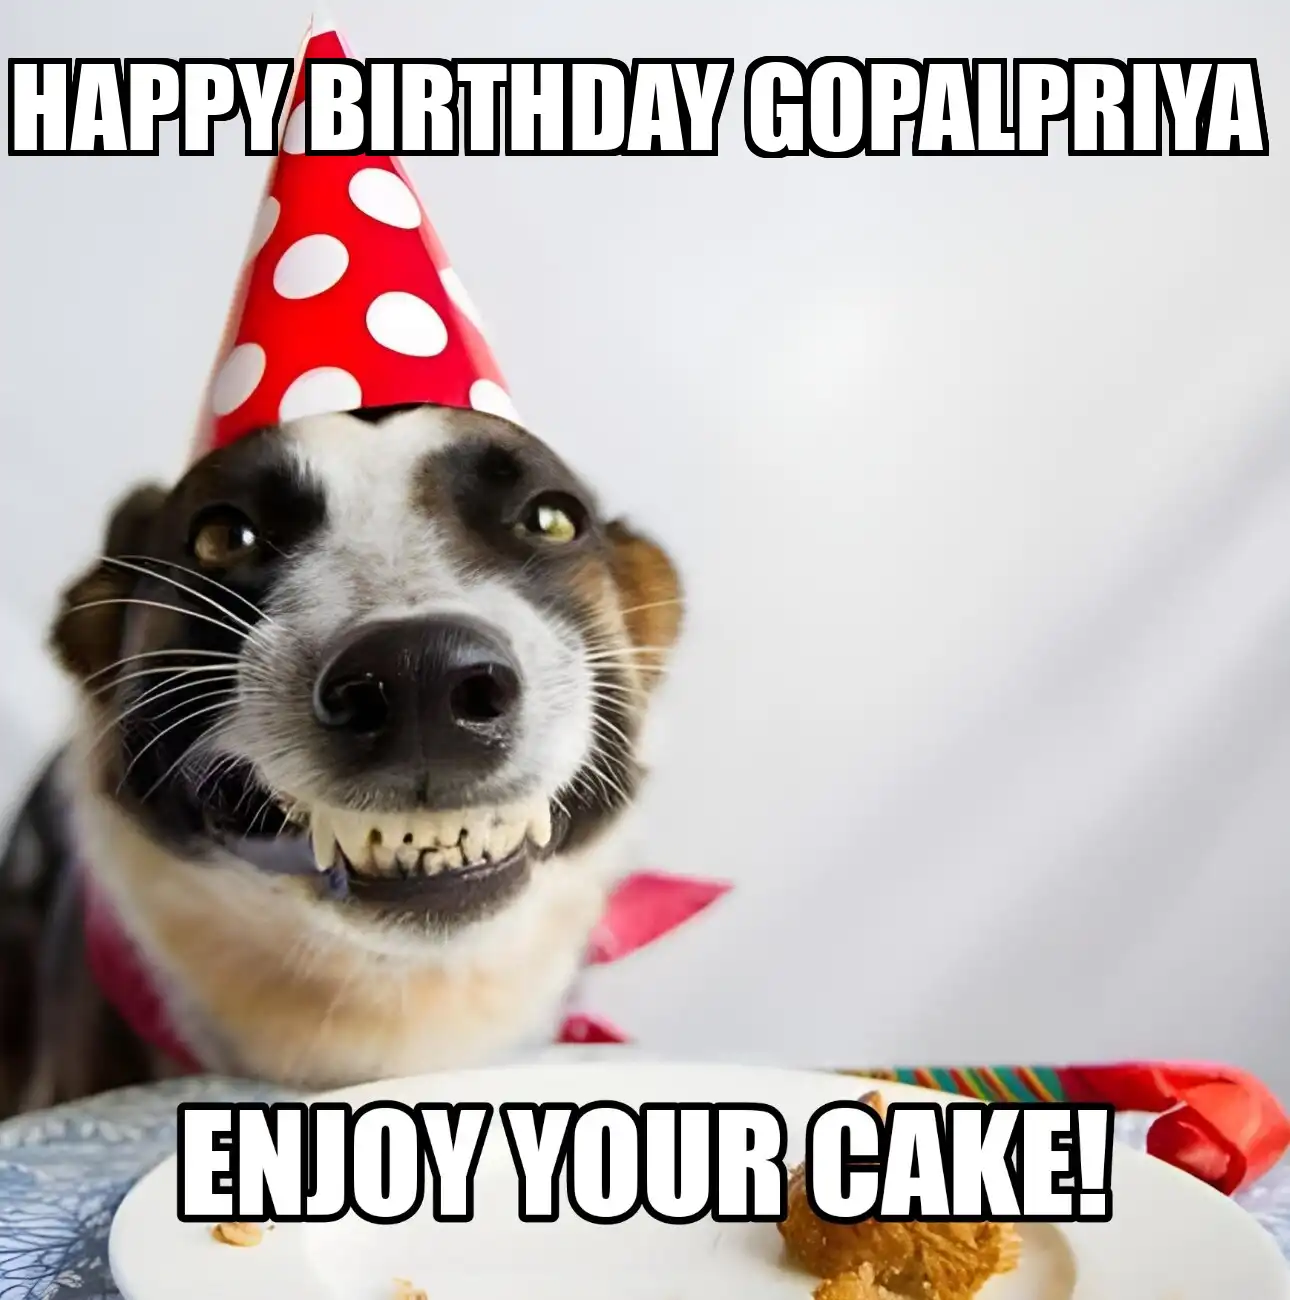 Happy Birthday Gopalpriya Enjoy Your Cake Dog Meme